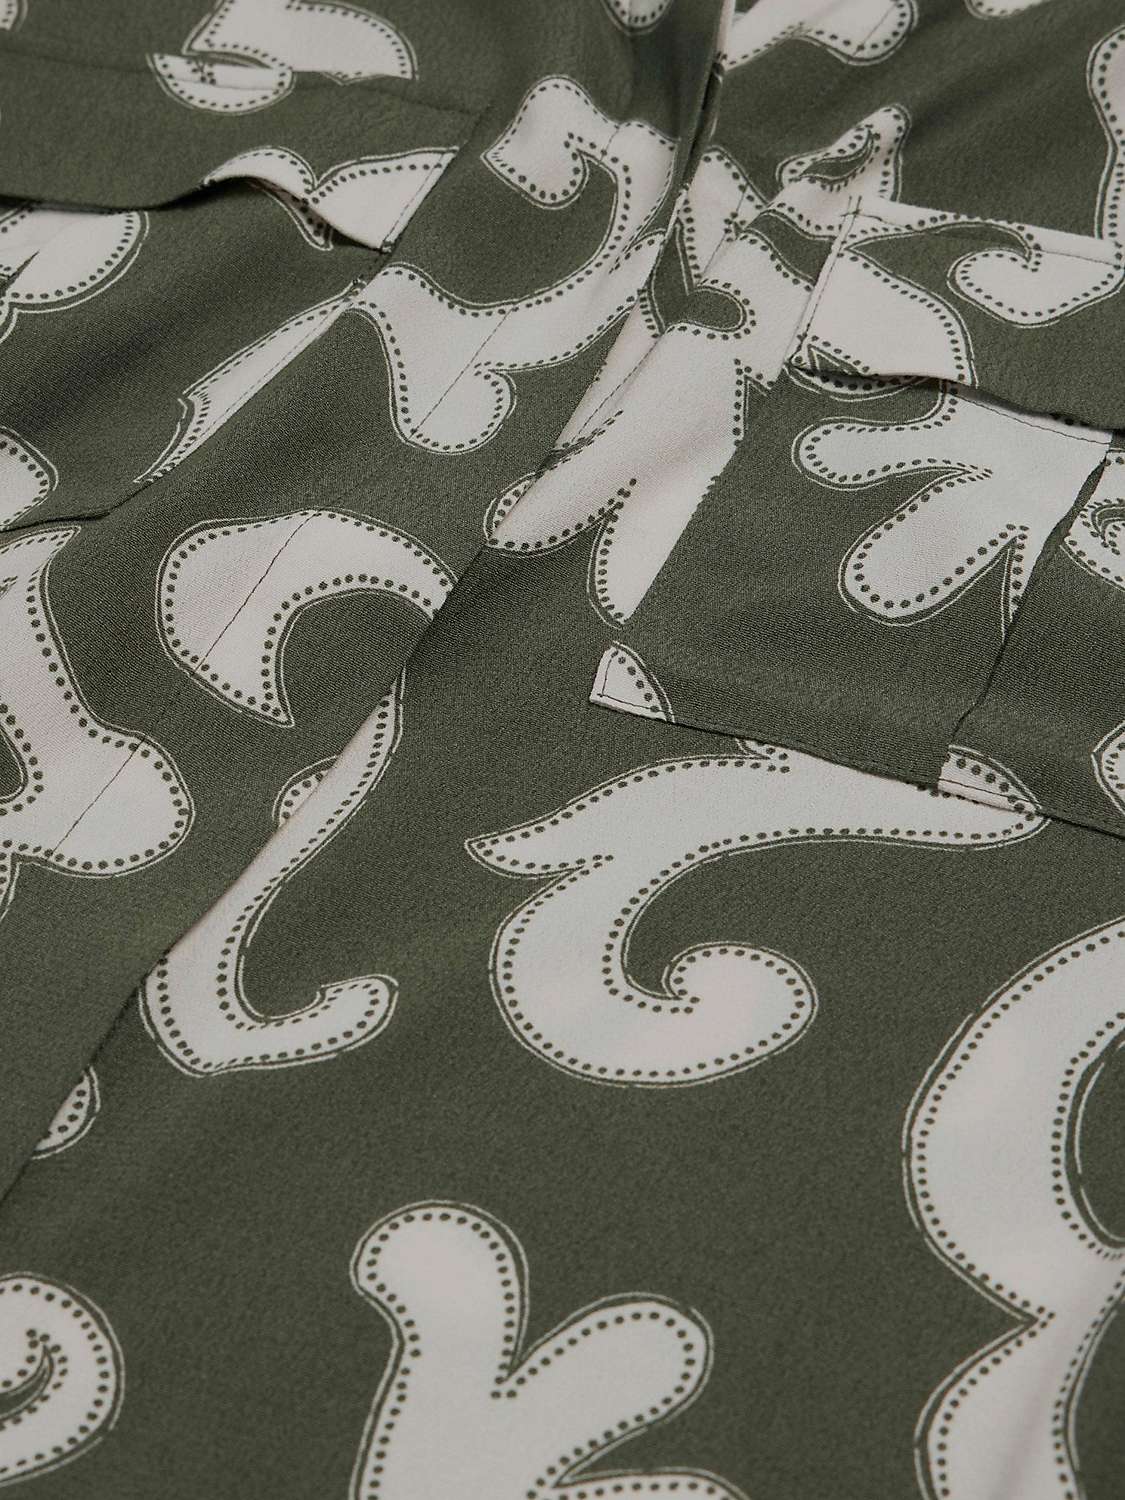 Buy Mint Velvet Abstract Print Longline Shirt, Khaki Online at johnlewis.com